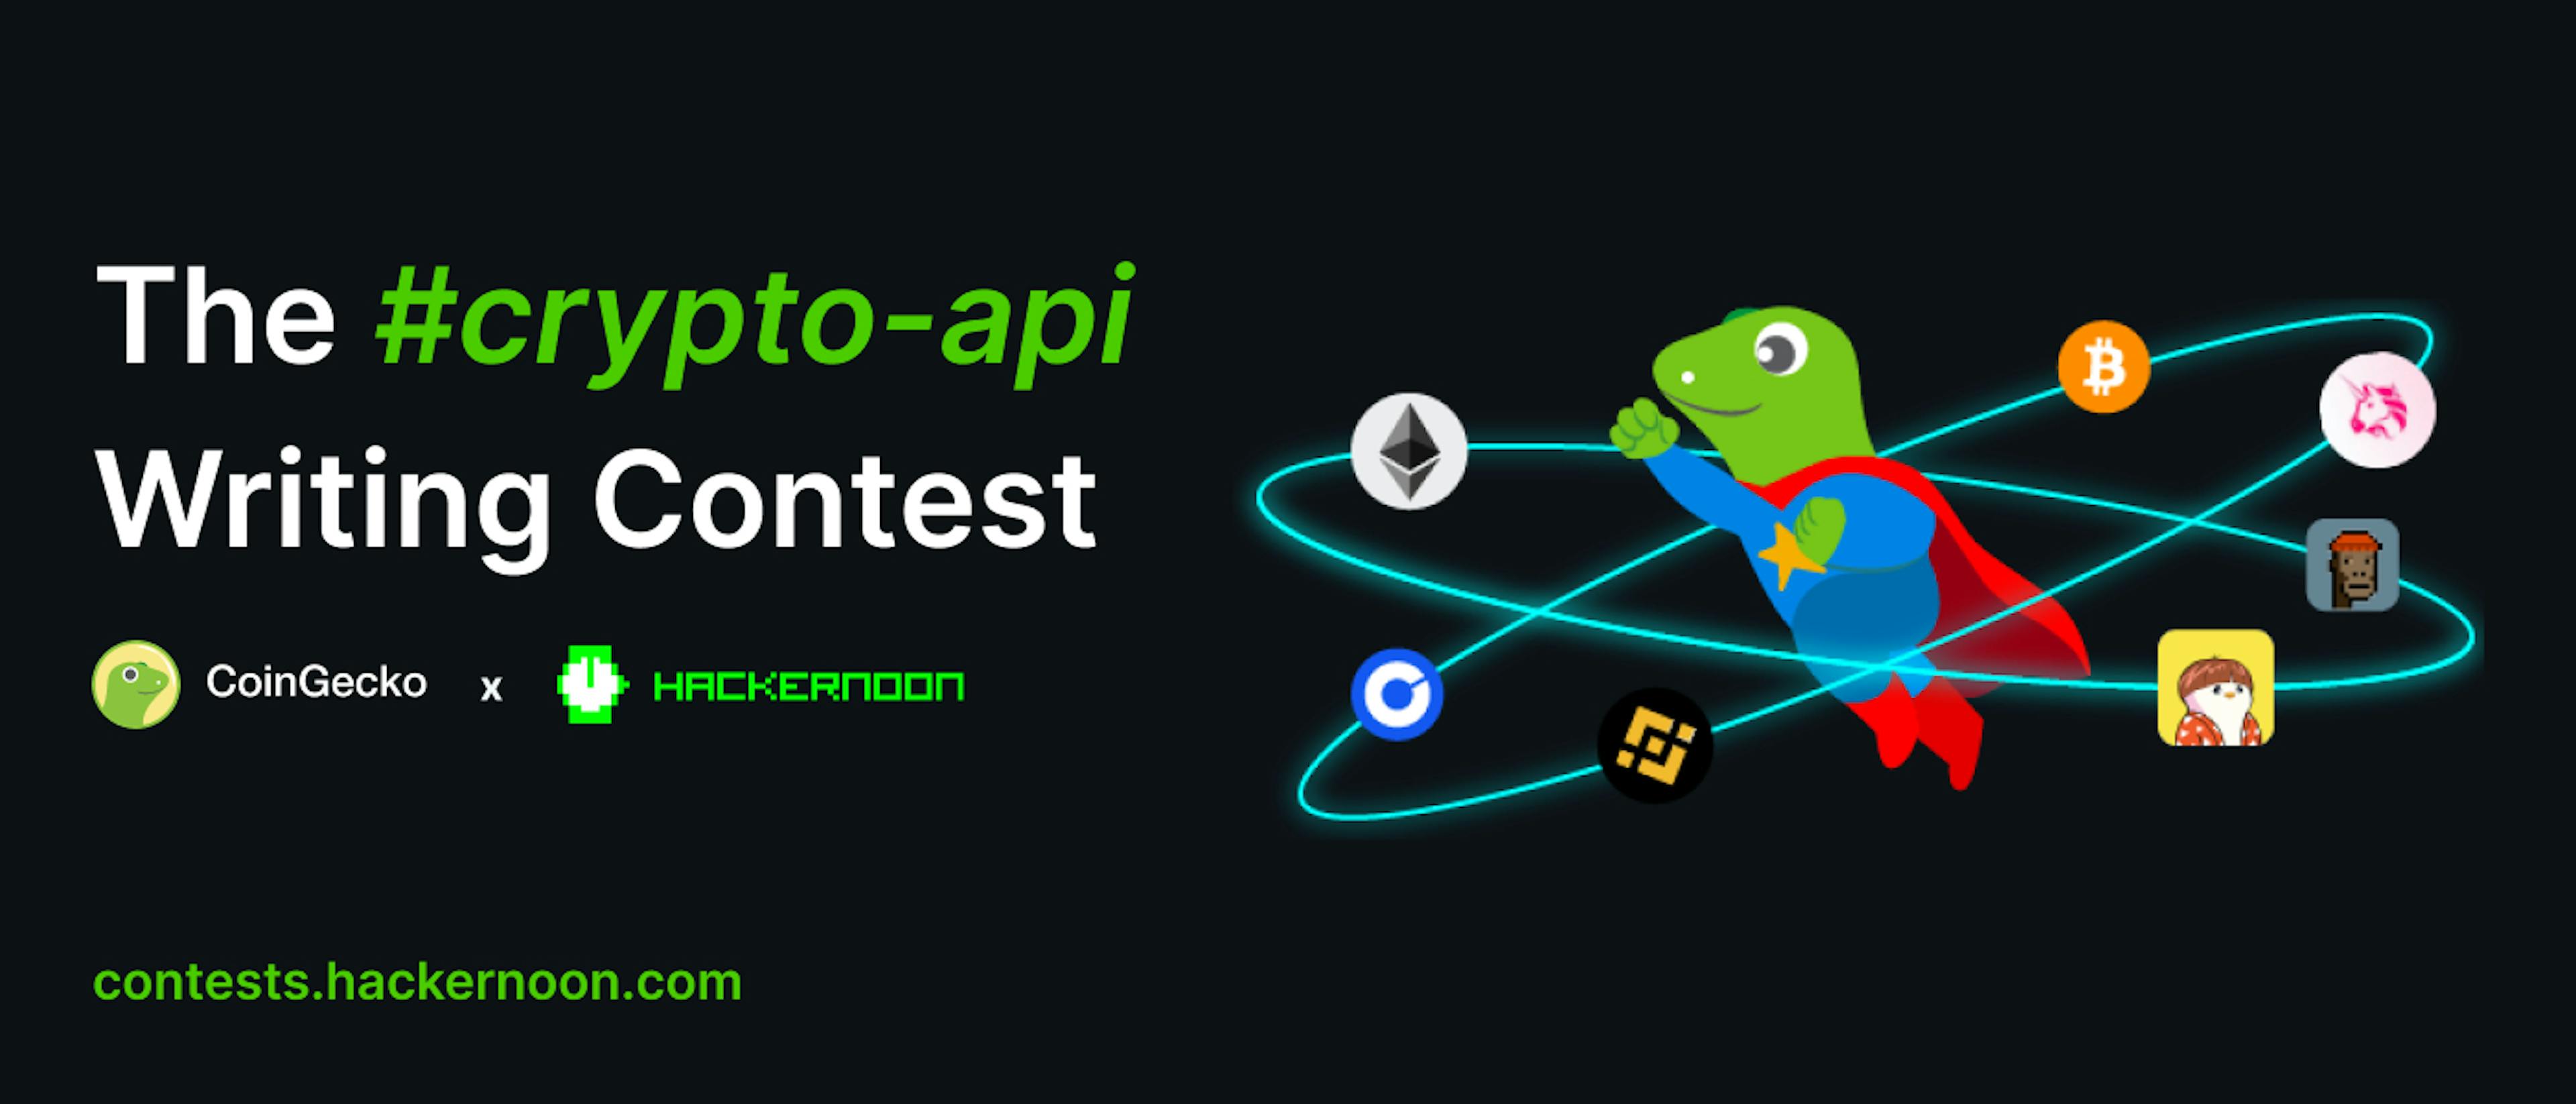 featured image - CoinGecko と HackerNoon による #crypto-api ライティング コンテスト